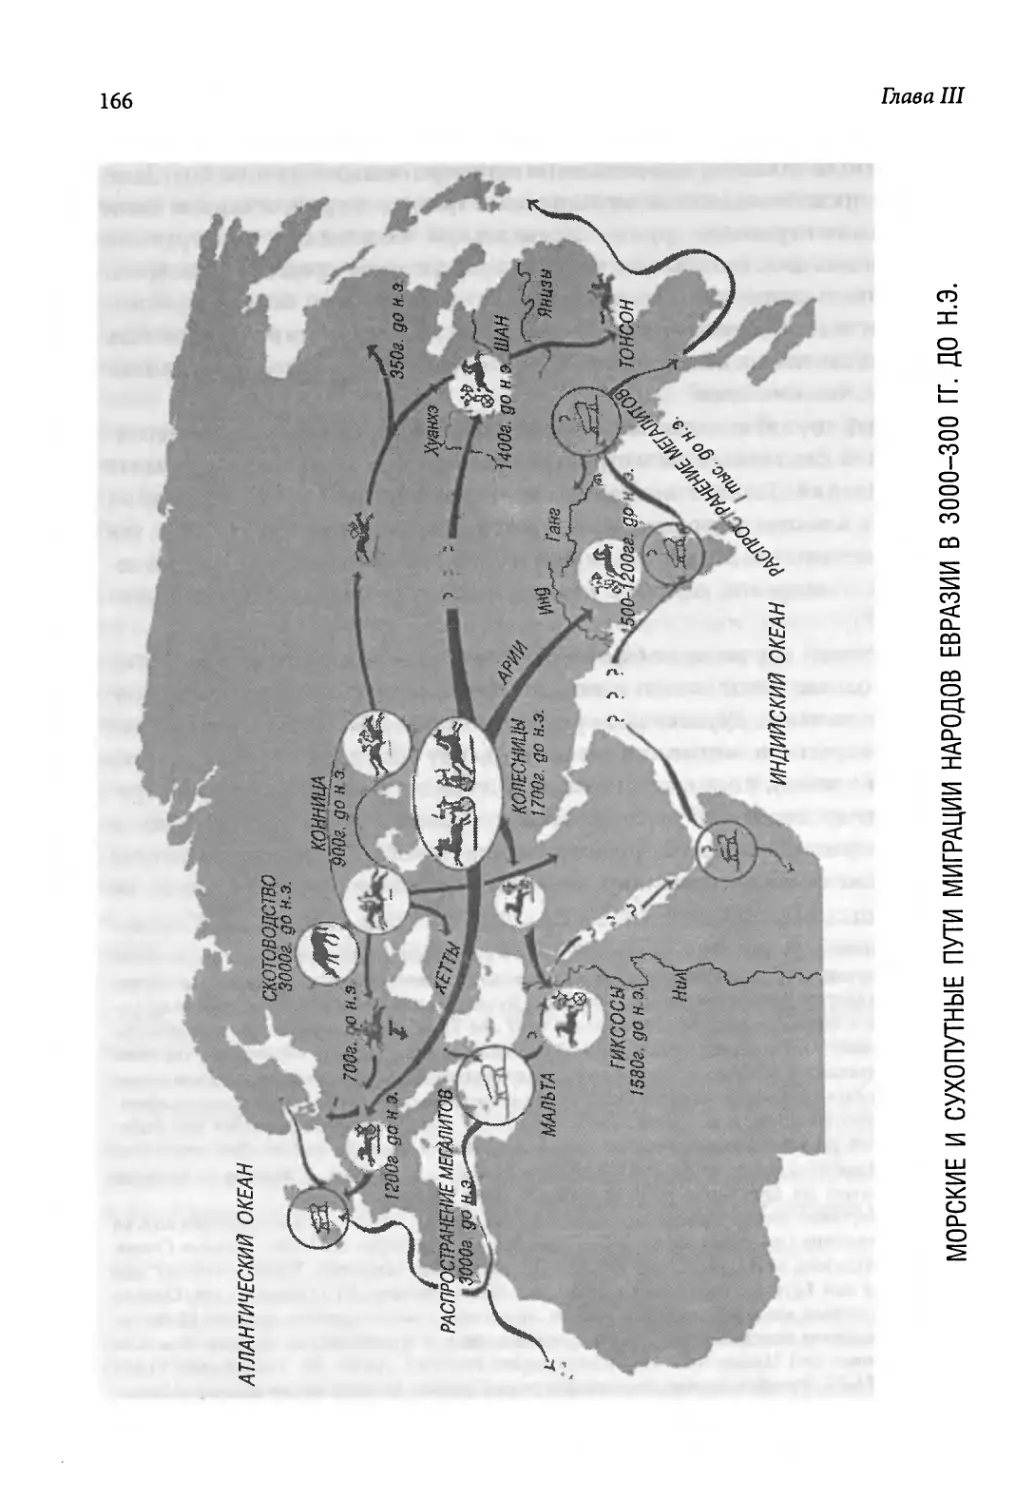 Морские и сухопутные пути миграции народов Евразии в 3000-300 гг. до н.э [166]